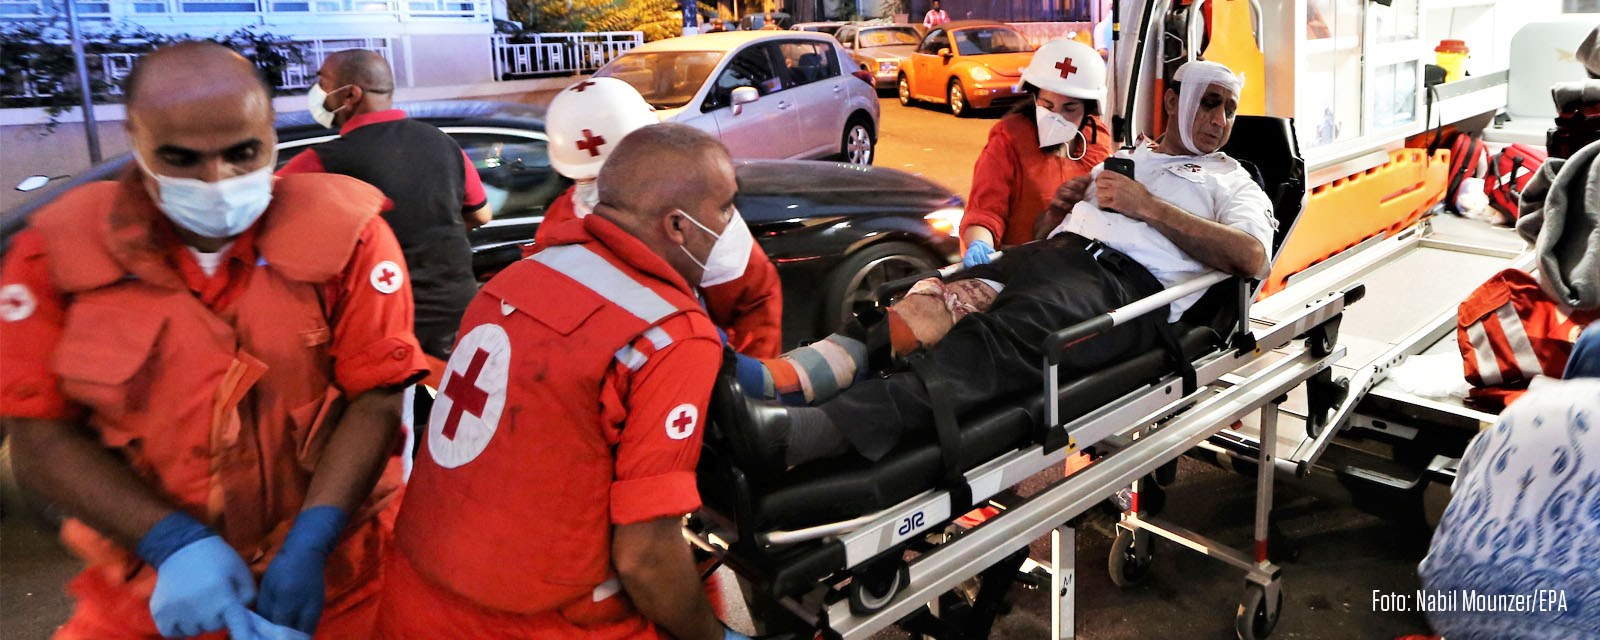 En skadet mann på båre blir løftet inn i ambulanse